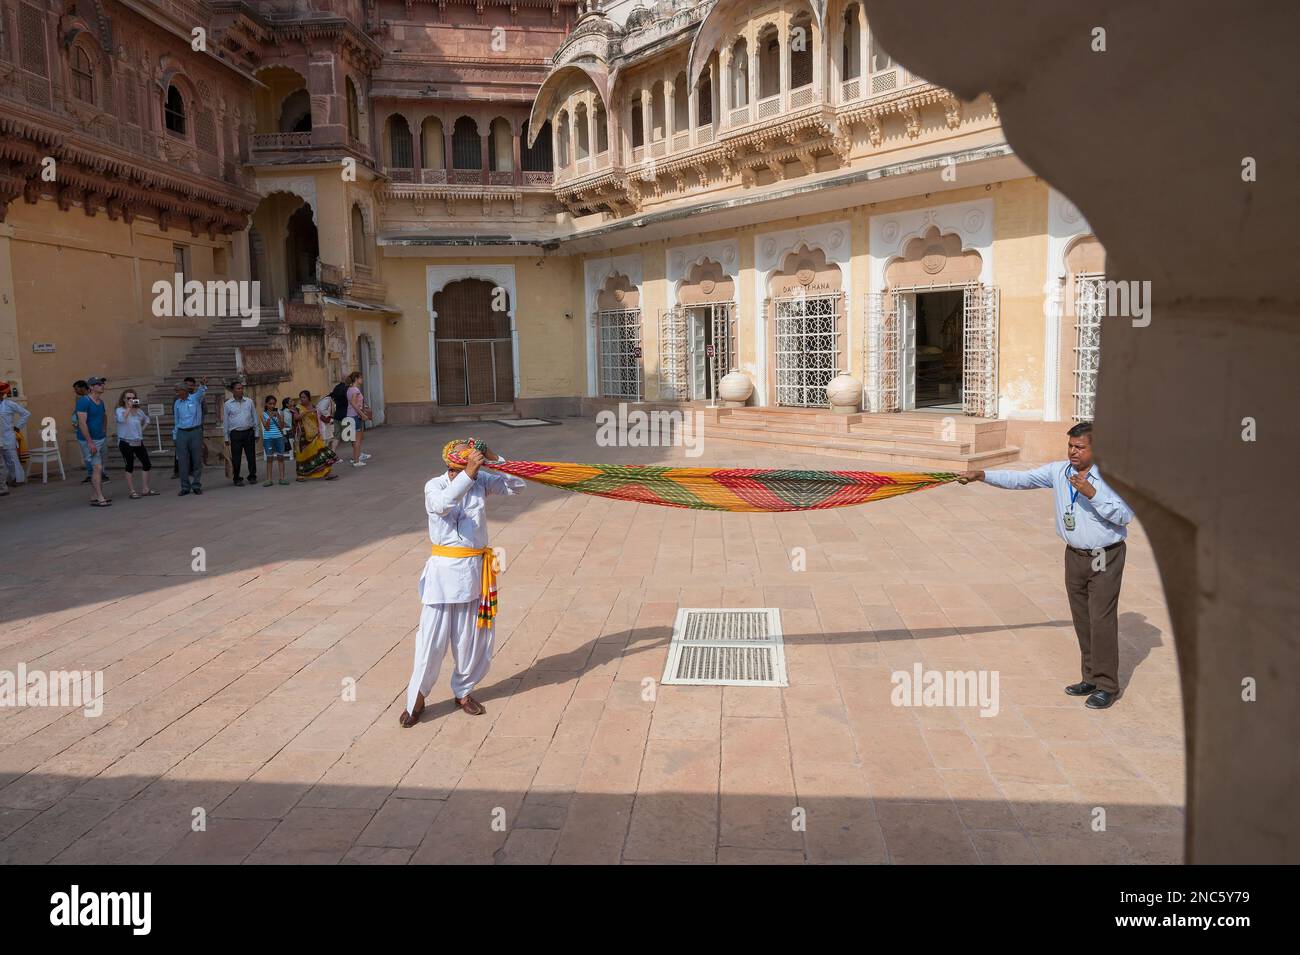 Jodhpur, Rajasthan, Inde - 19 octobre 2019 : démonstration pour savoir comment porter un turban, pagri, coiffe ou coiffe basée sur un enroulement de tissu. Banque D'Images